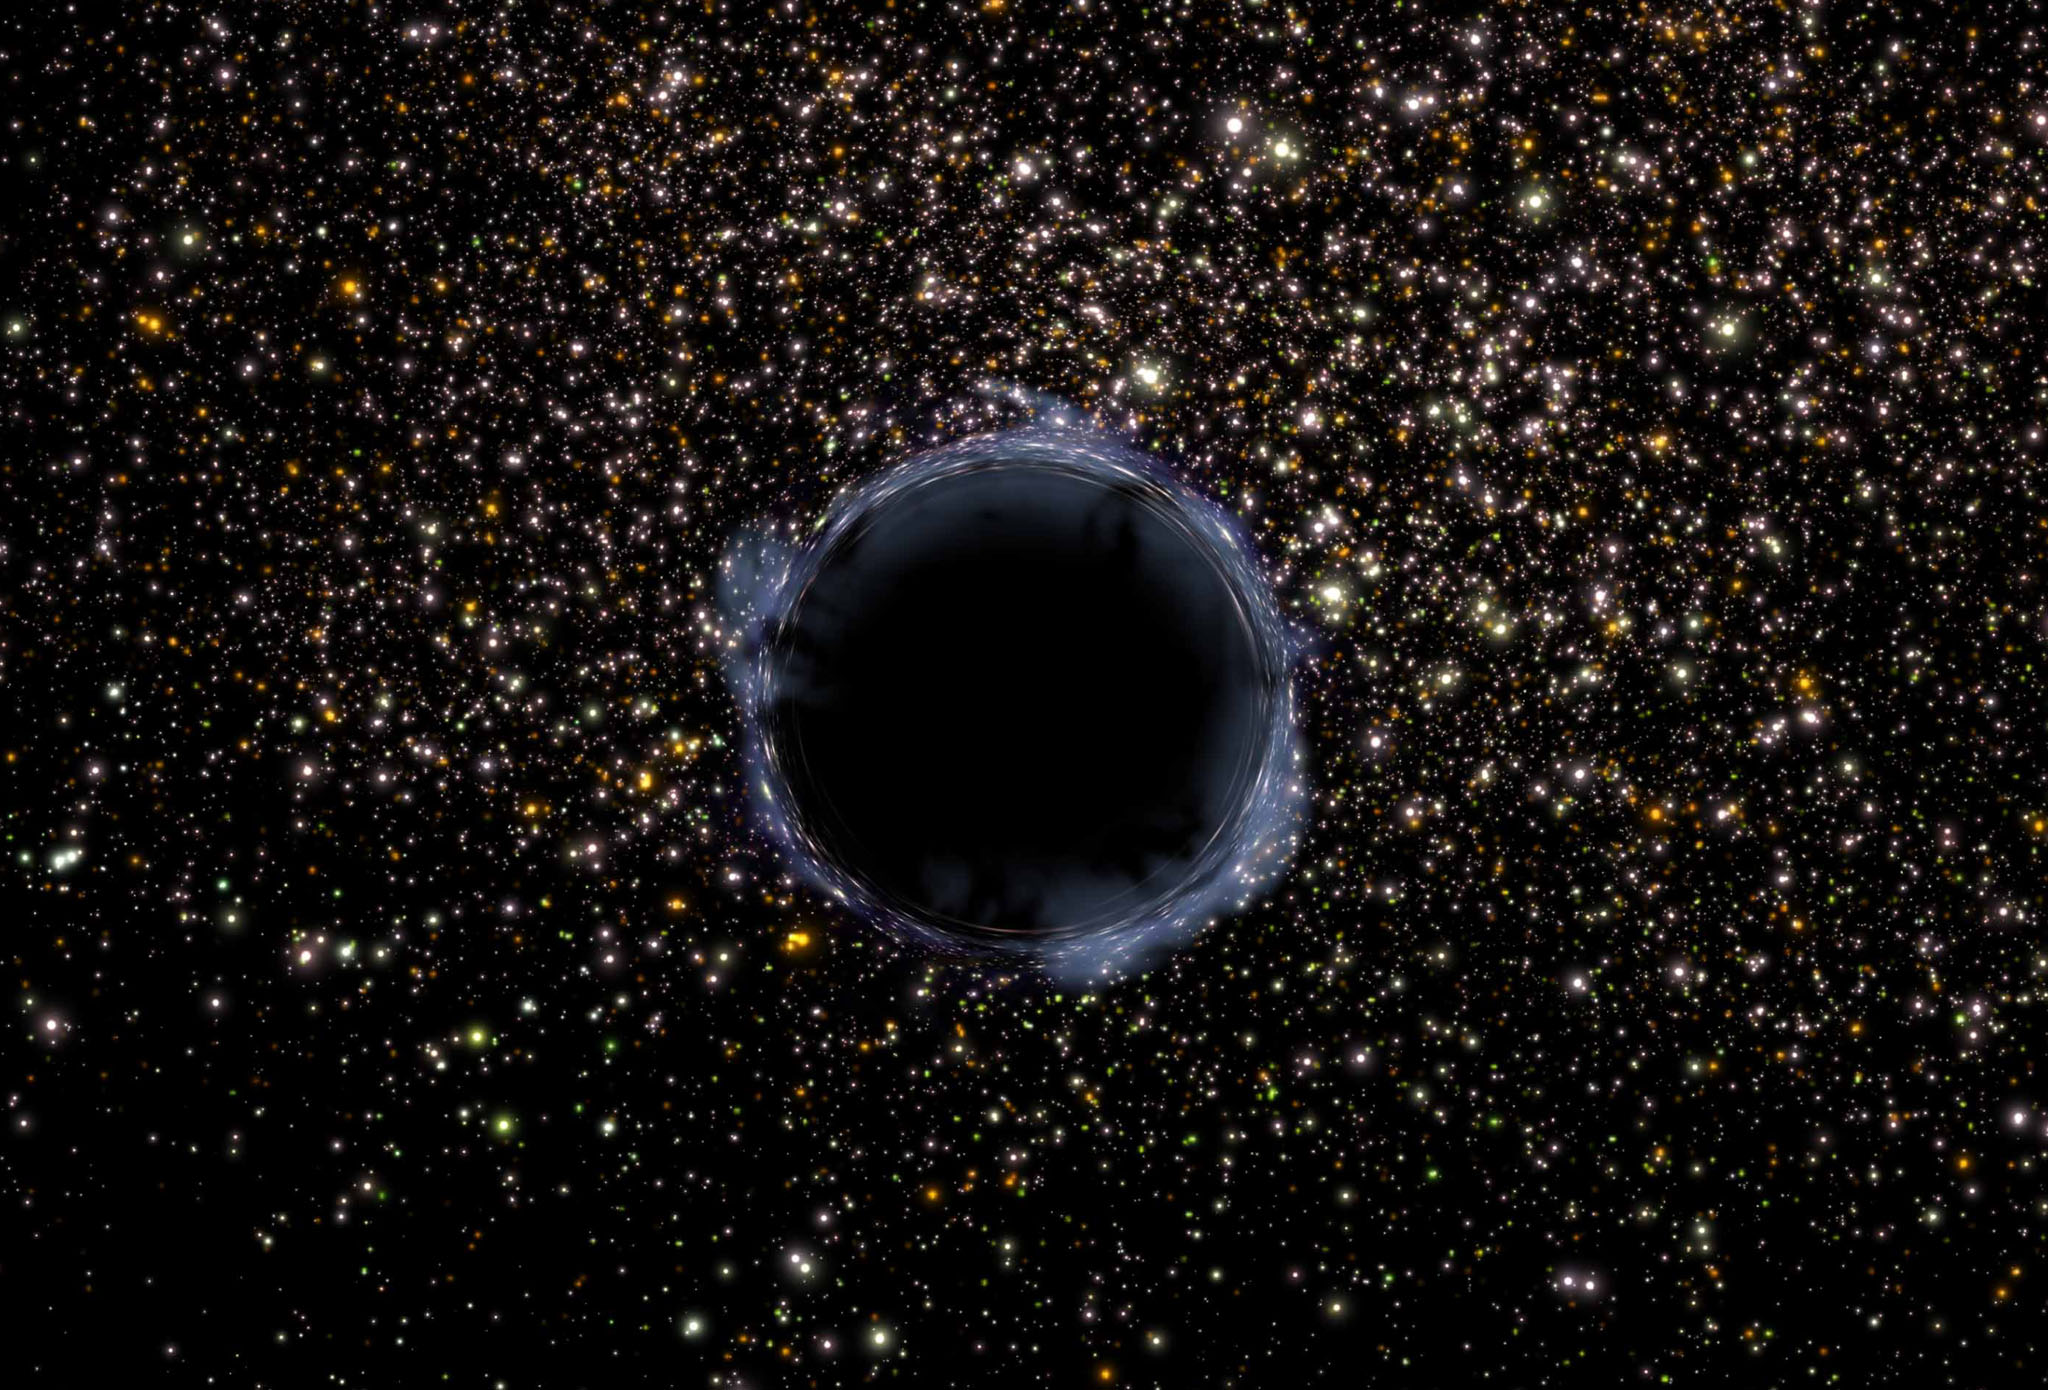 Ίσως ανακαλύφθηκε η δεύτερη μεγαλύτερη μαύρη τρύπα στον γαλαξία μας